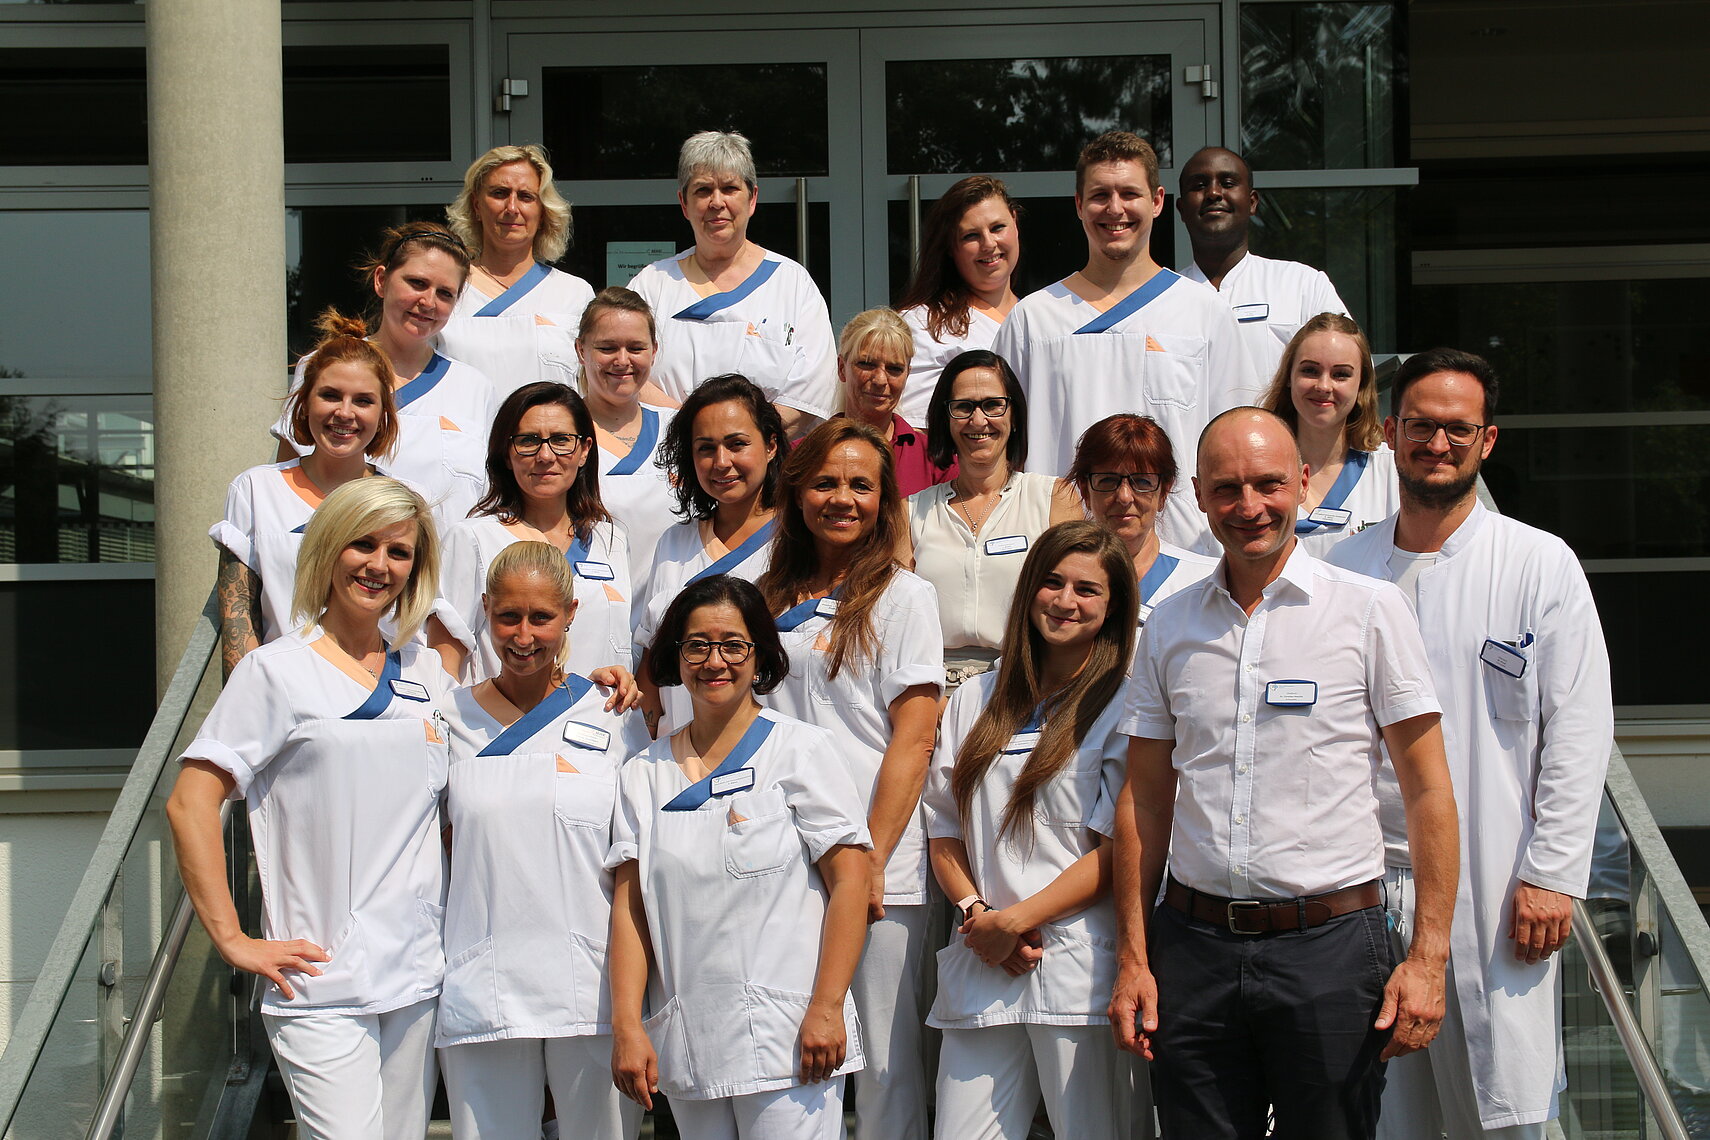 Das Team des Maria-Hilf-Krankenhauses in Bergheim bei Köln - Spezialisten für Ihre Gesundheit